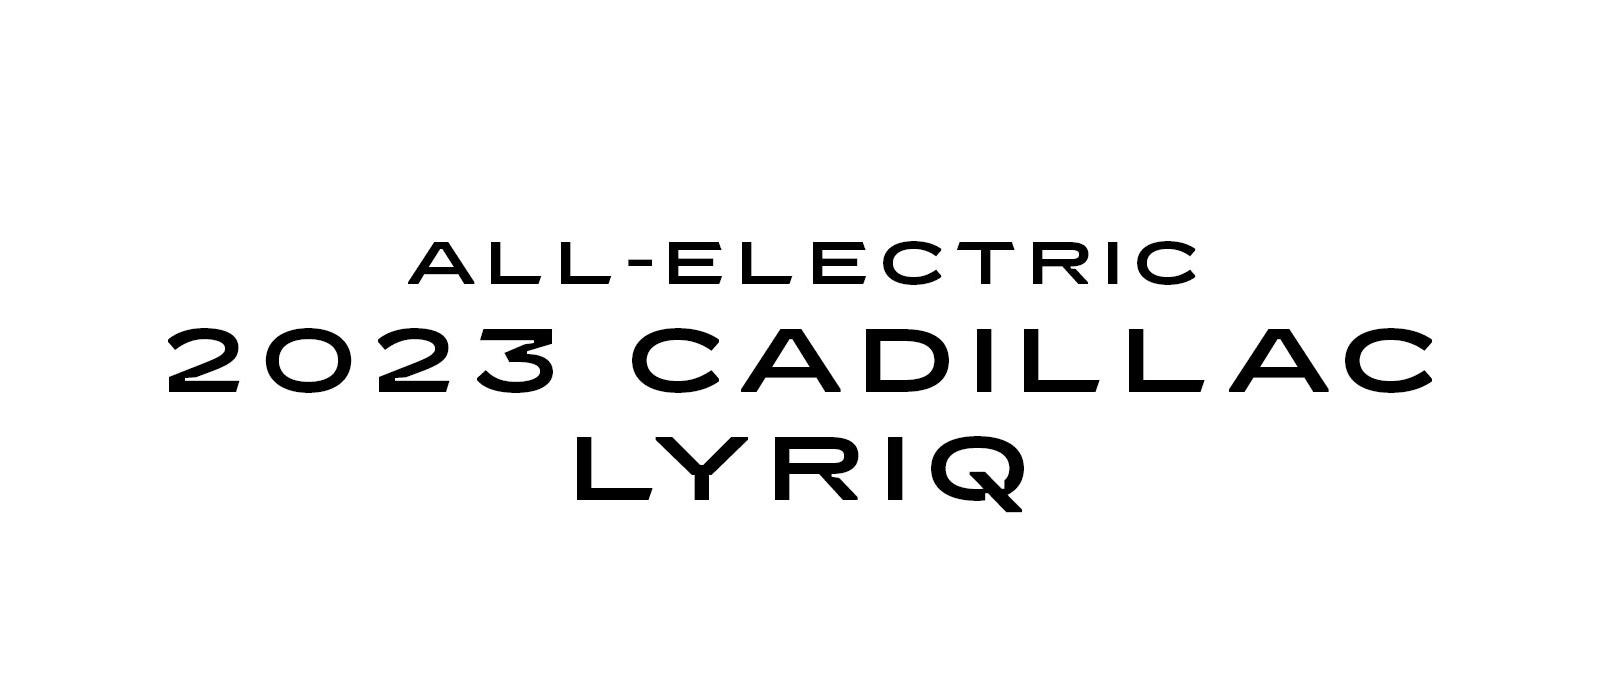 All-Electric 2023 Cadillac Lyriq